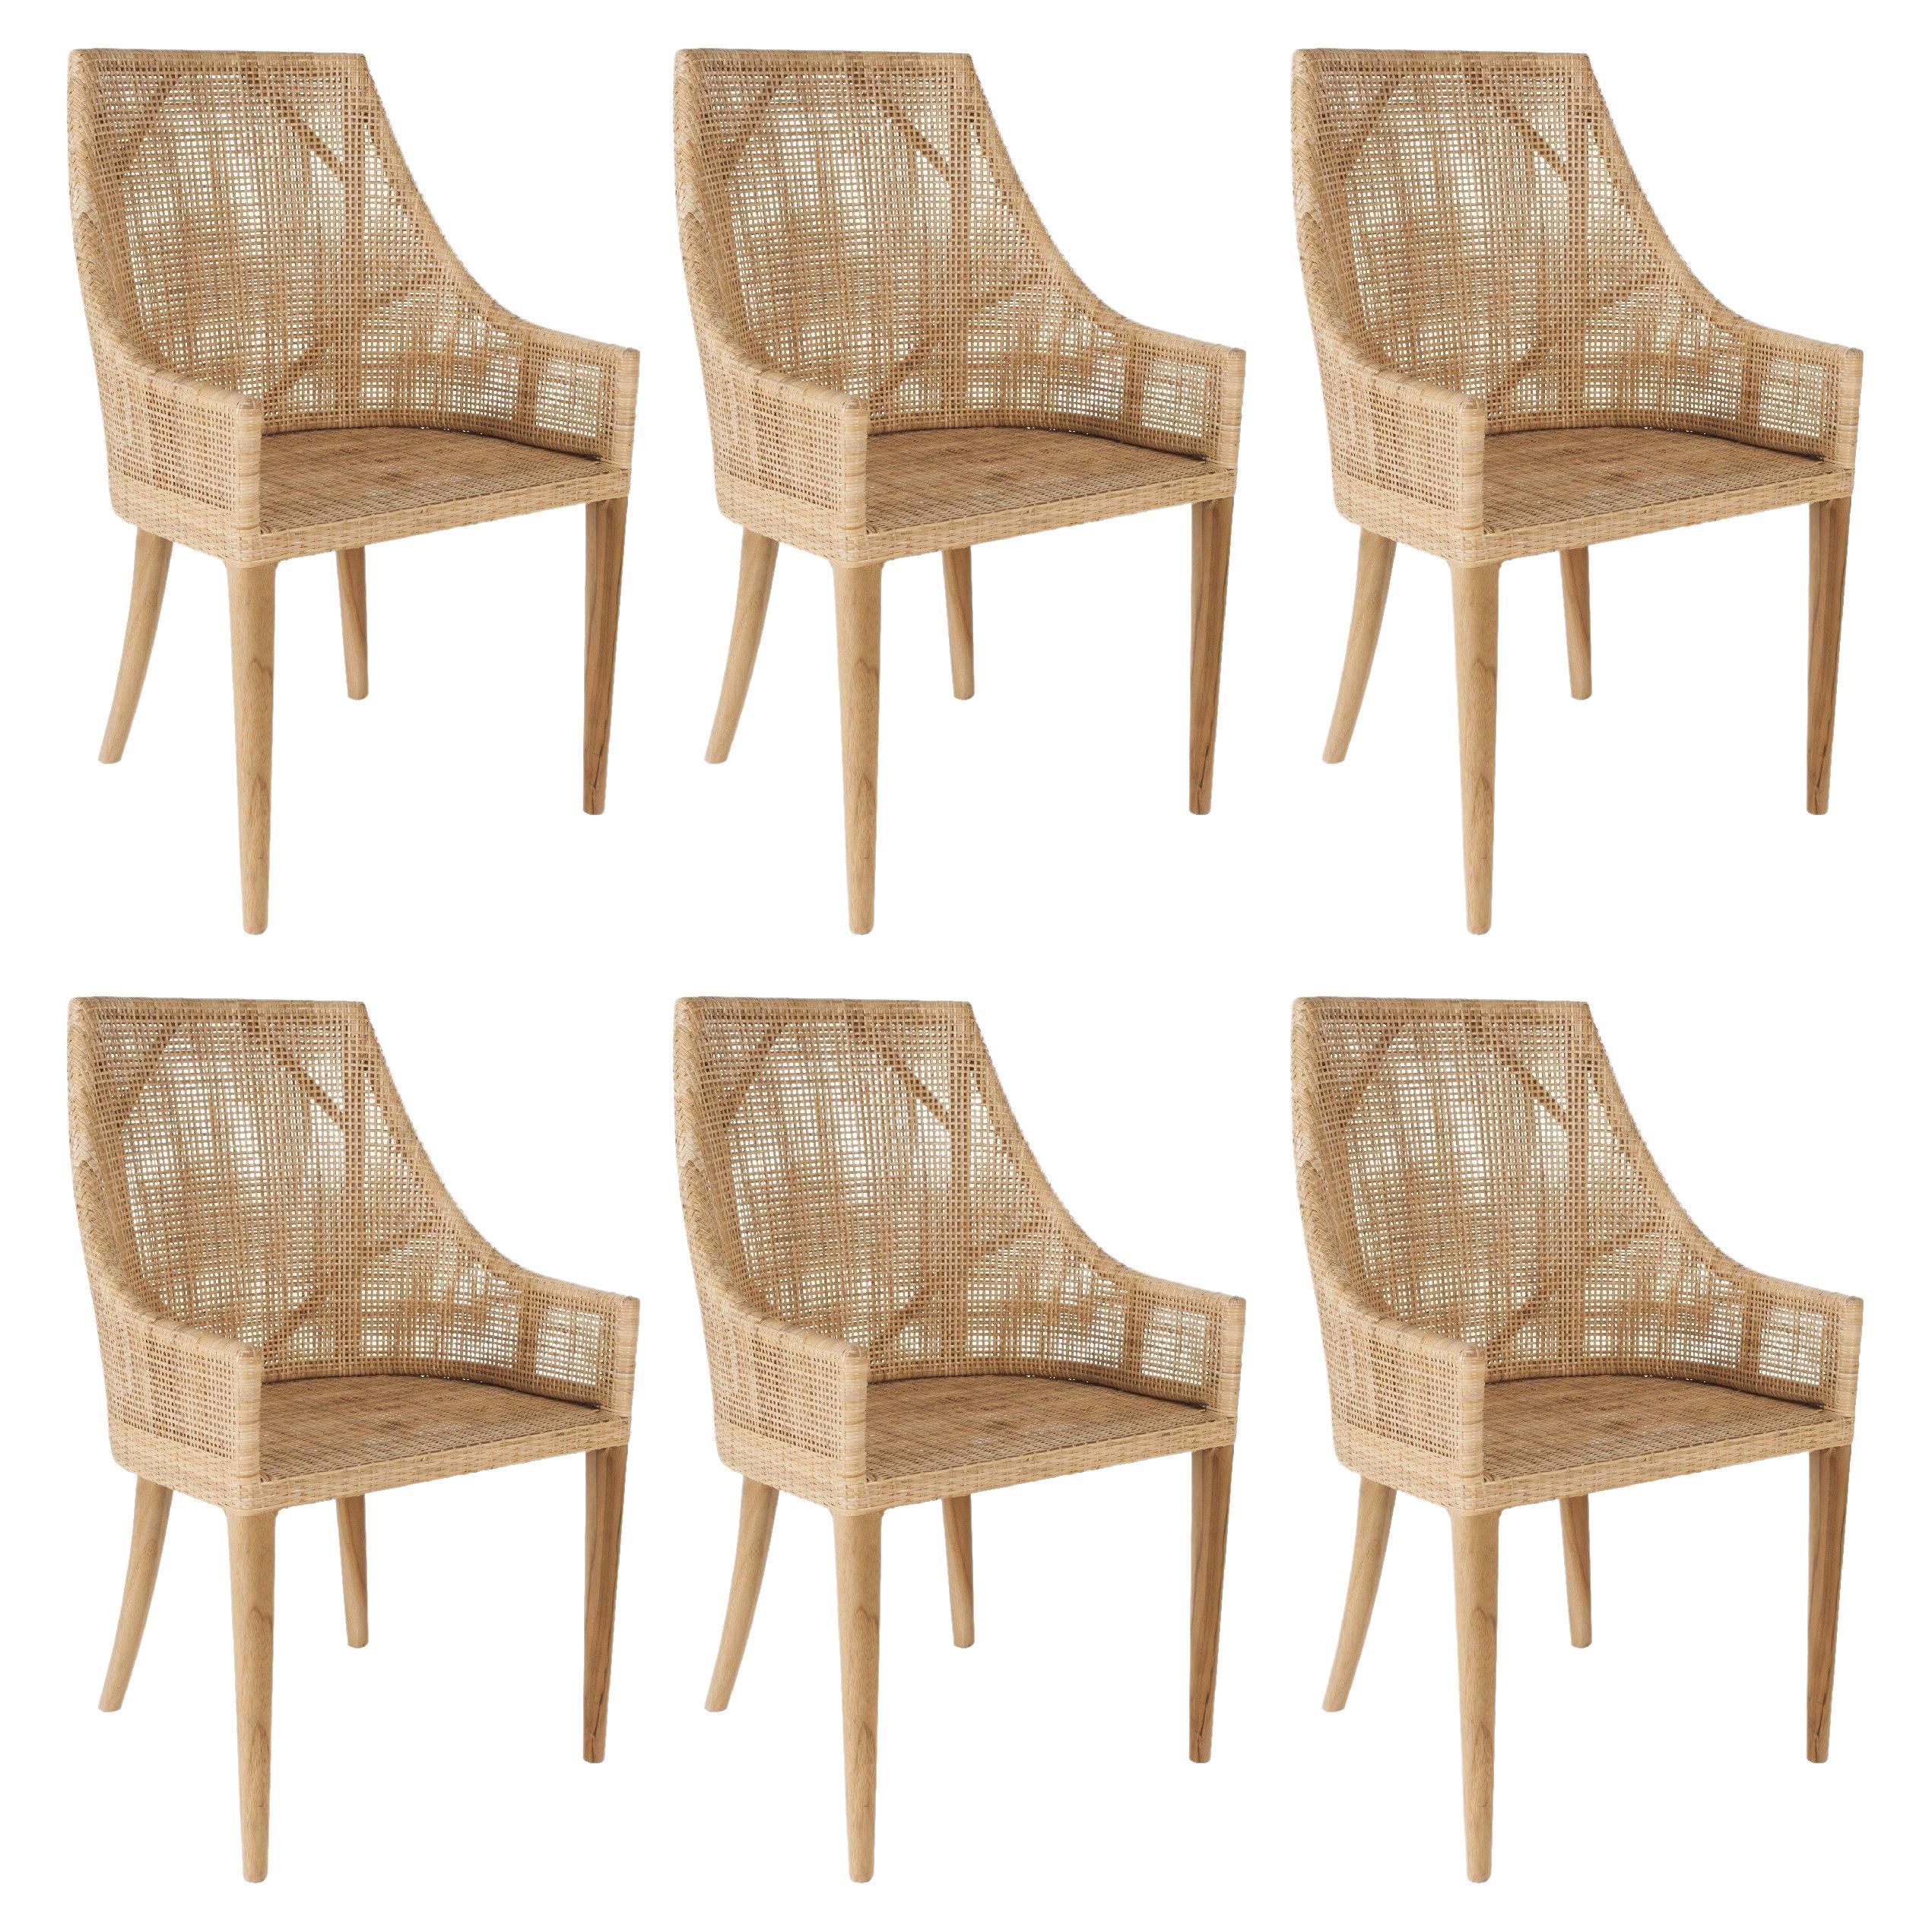 Ensemble de six chaises en bois et en rotin tressé à la main